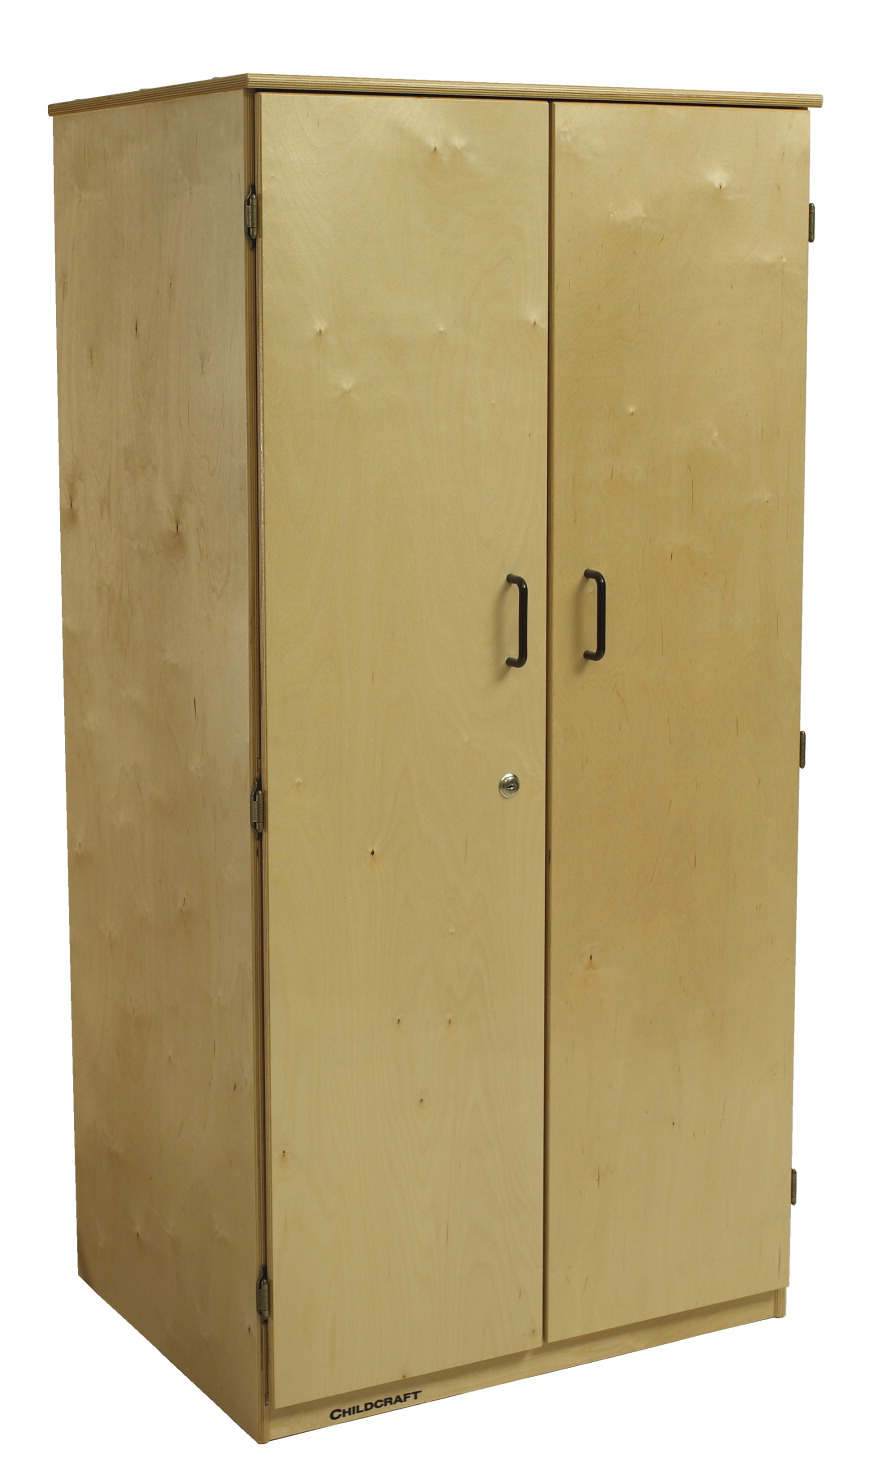 1484118 Childcraft Locking 2-door Teacher Storage Unit